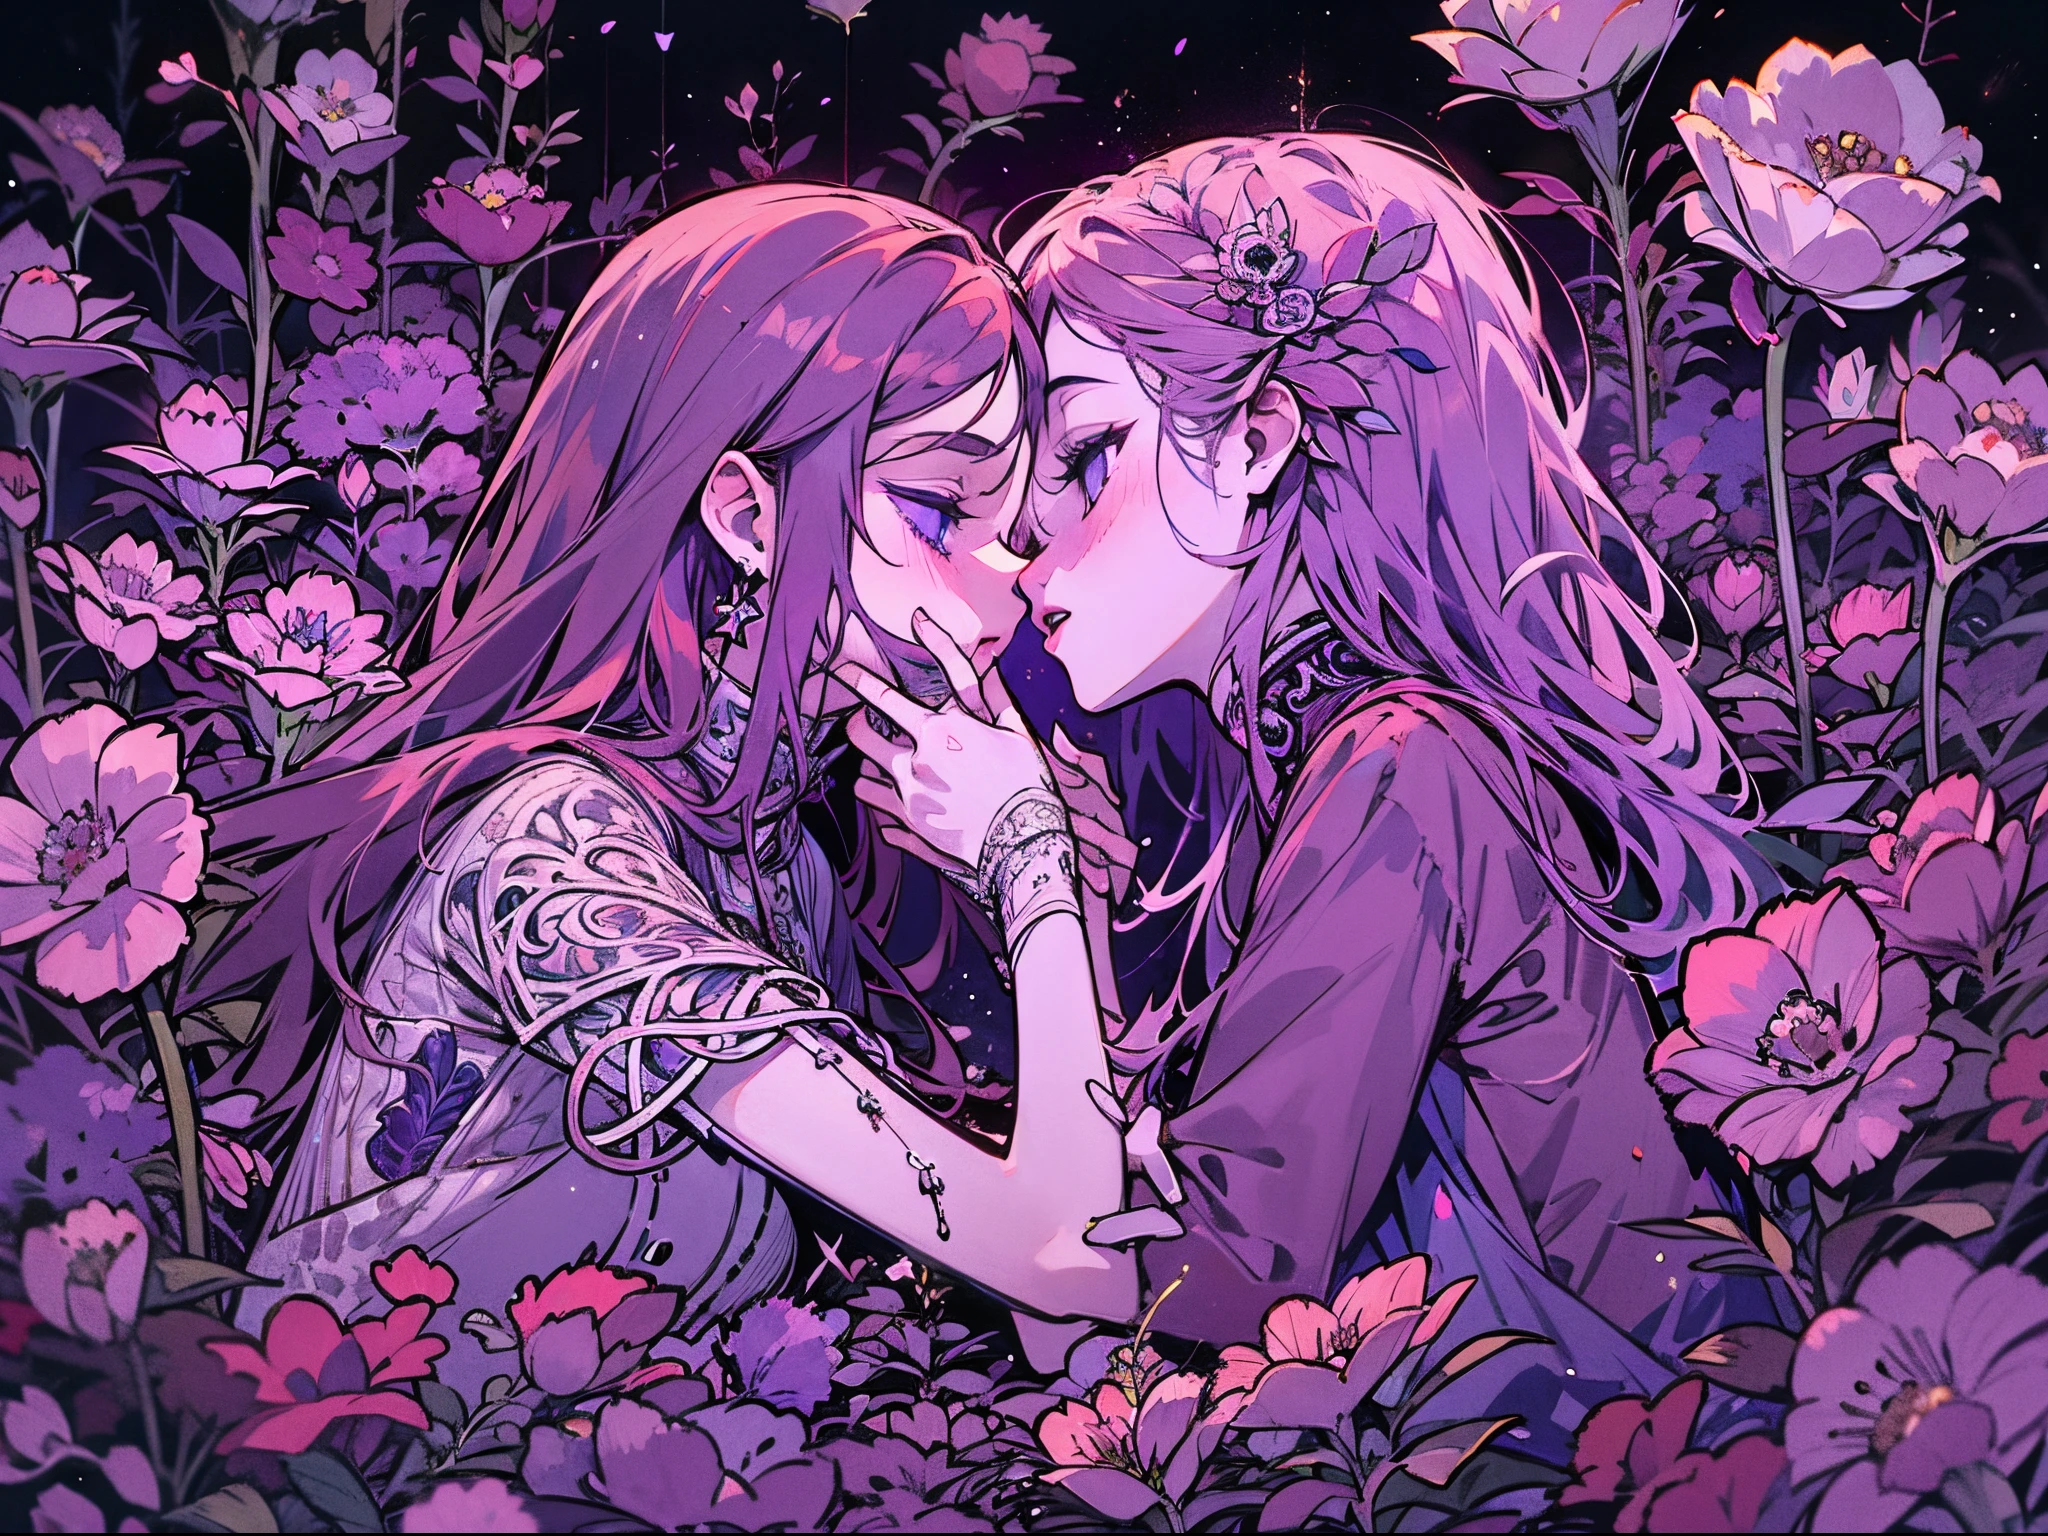 두 소녀, 꽃에 둘러싸인 죽은 사람, 다른 한 명은 시체에 키스하고 있어, 섬뜩한 이미지, 보라색 밤, 푸아티에, 입자, 매우 복잡한 세부 사항, 애니메이션 이미지, 라이브 촬영.